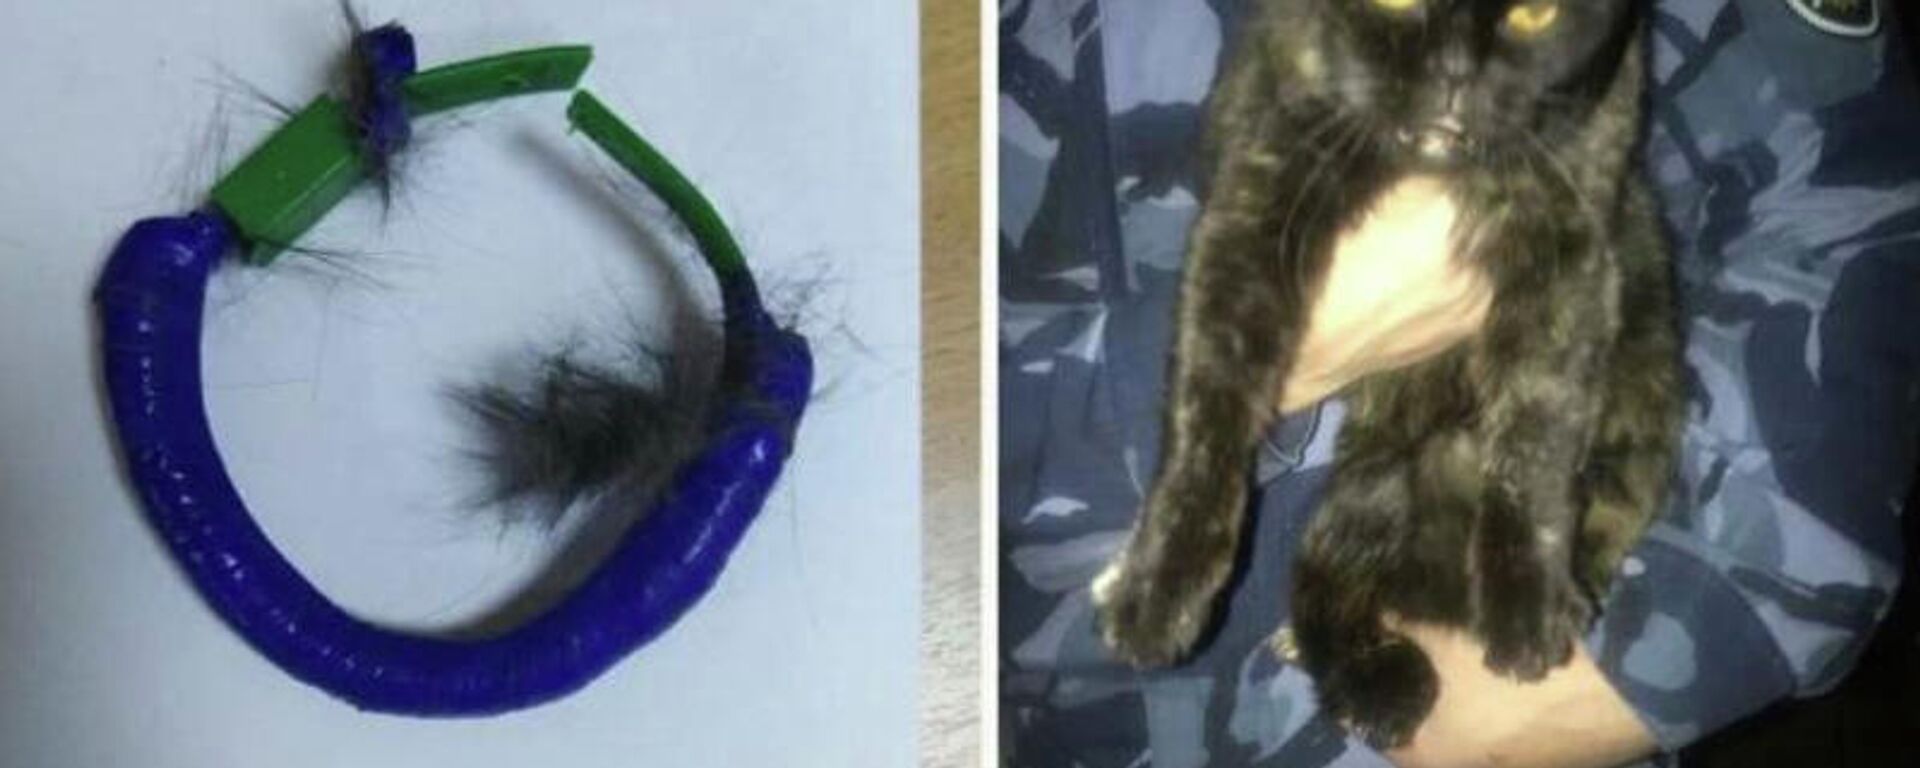 Rusya'da bir hapishanede boynundaki tasmayla uyuşturucu madde taşıdığı tespit edilen kedi yakalandı. - Sputnik Türkiye, 1920, 20.10.2021